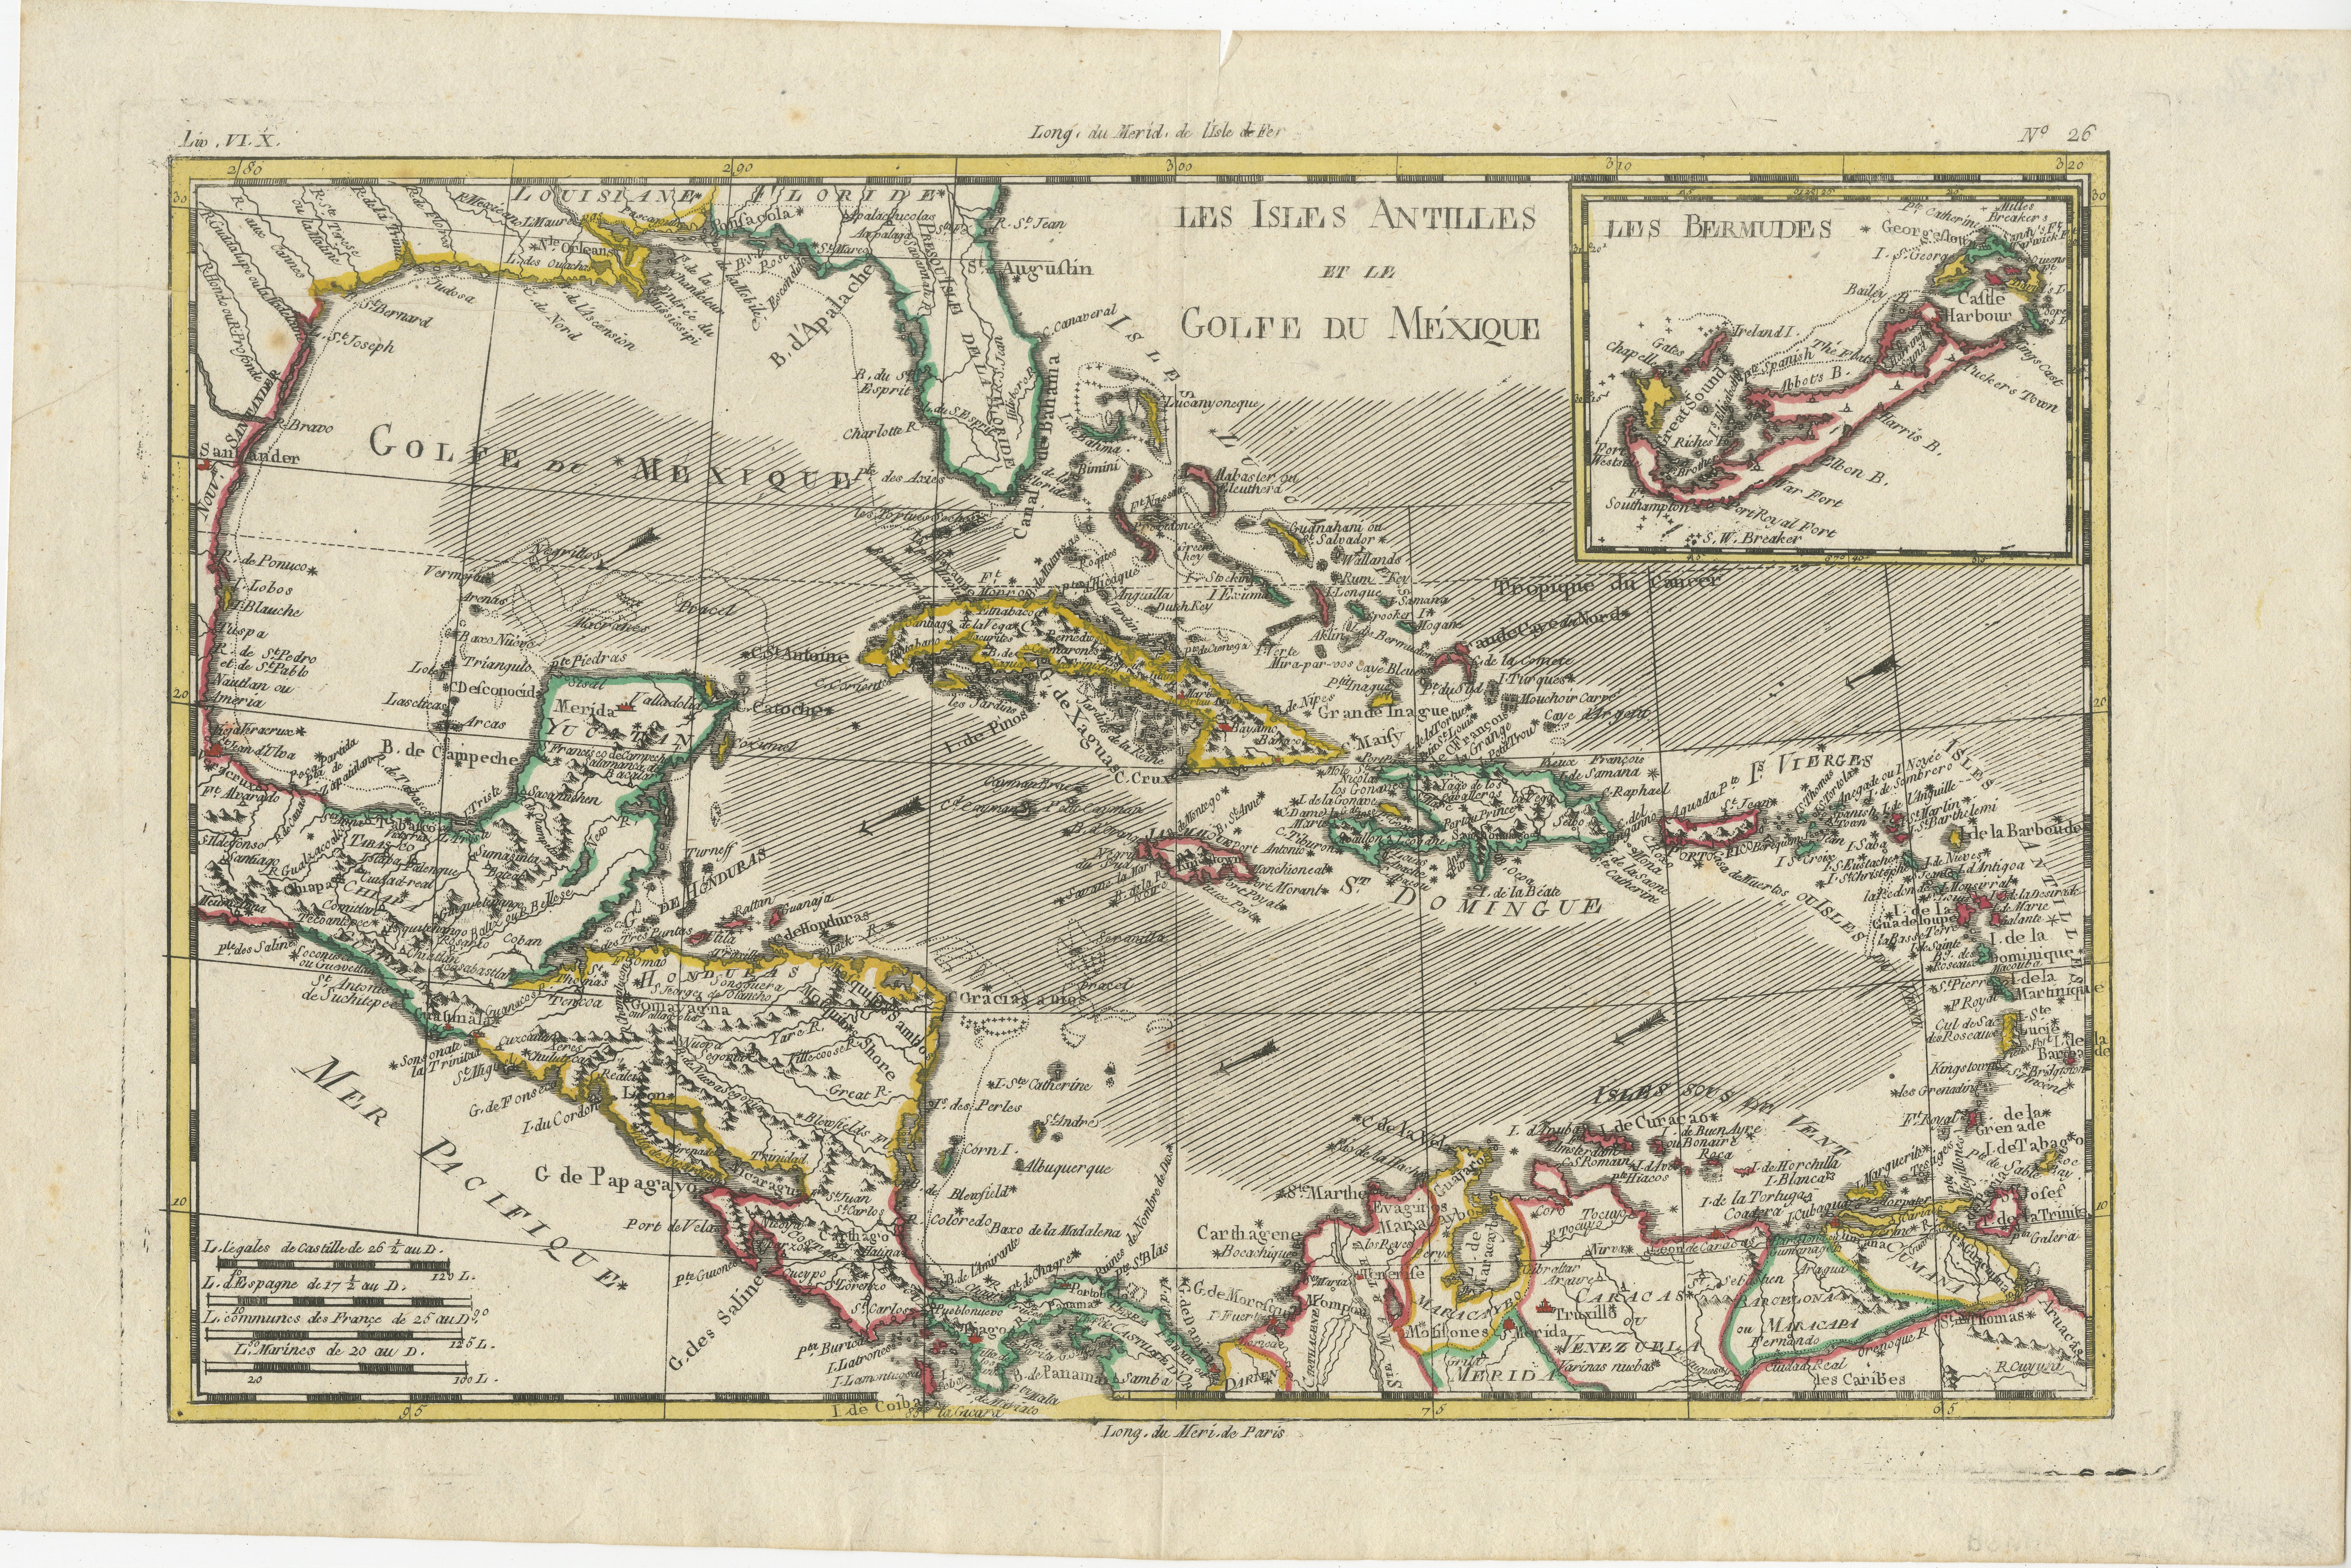 Die Karte der Westindischen Inseln, des Golfs von Mexiko, der Antillen und der Karibik von Rigobert Bonne und G. Raynal aus dem Jahr 1780 ist ein bemerkenswertes kartografisches Werk, das einen detaillierten und umfassenden Überblick über die Region